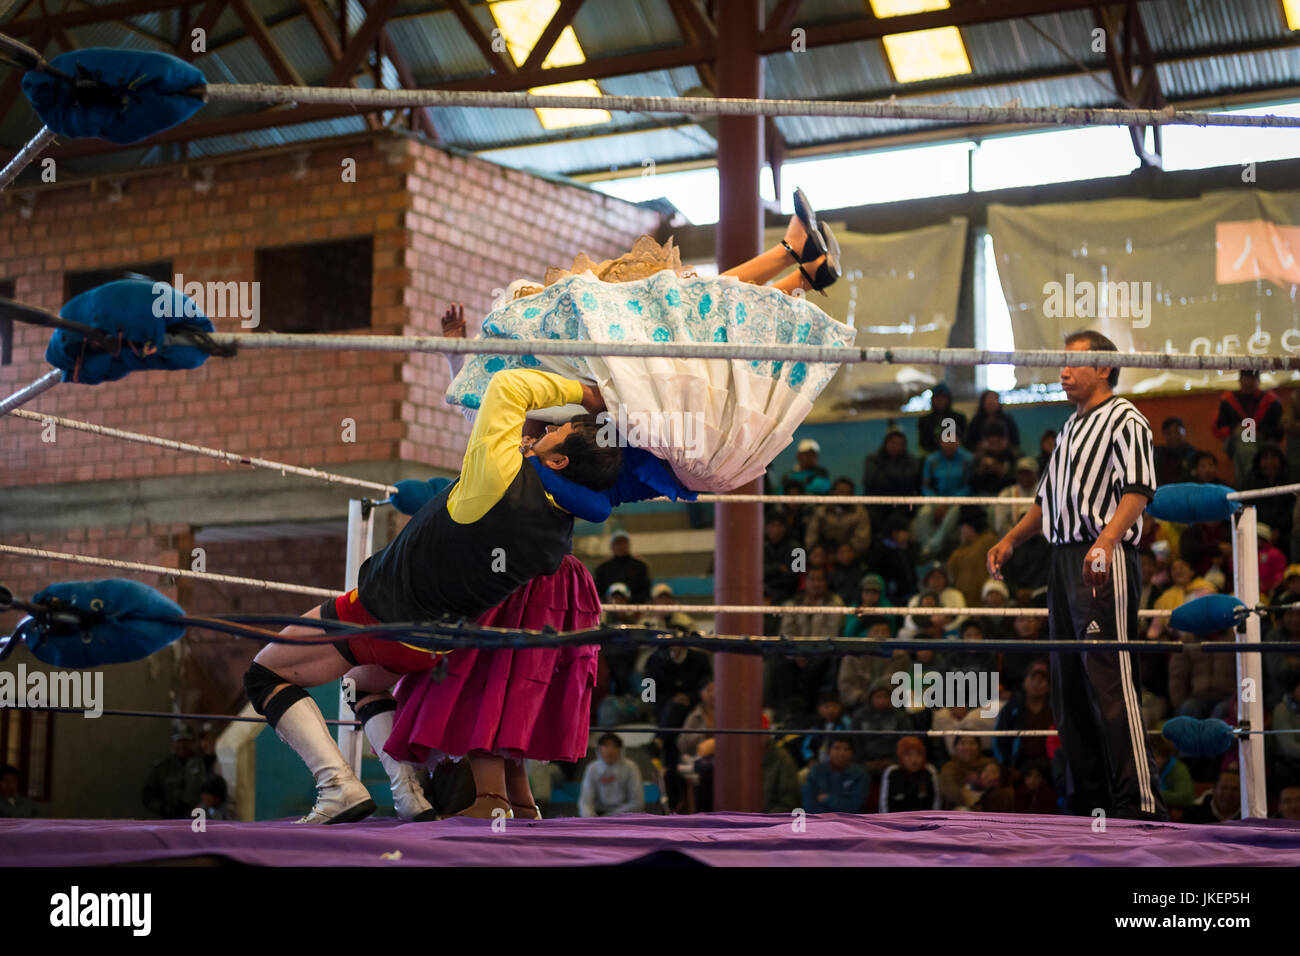 El Alto, Bolivie - 8 décembre 2013 : lutteurs Cholita lors d'un combat de lutte dans la ville de El Alto, en Bolivie. Les combats sont un groupe de Cholitas Banque D'Images